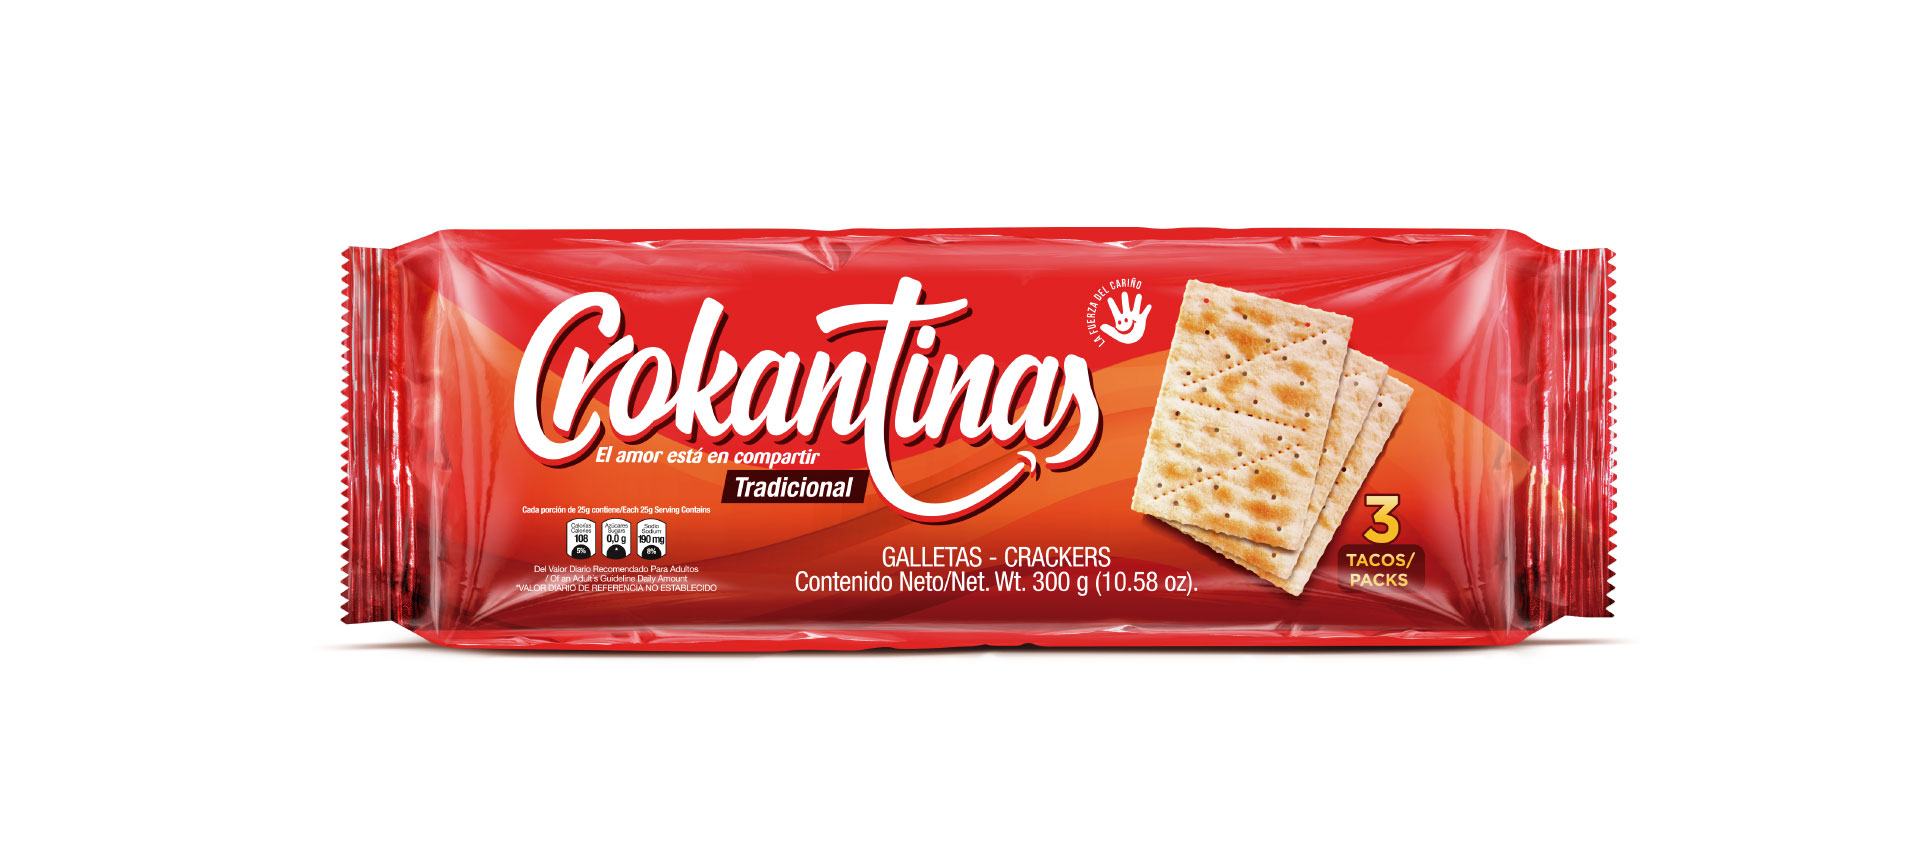 Crokantinas-packaging